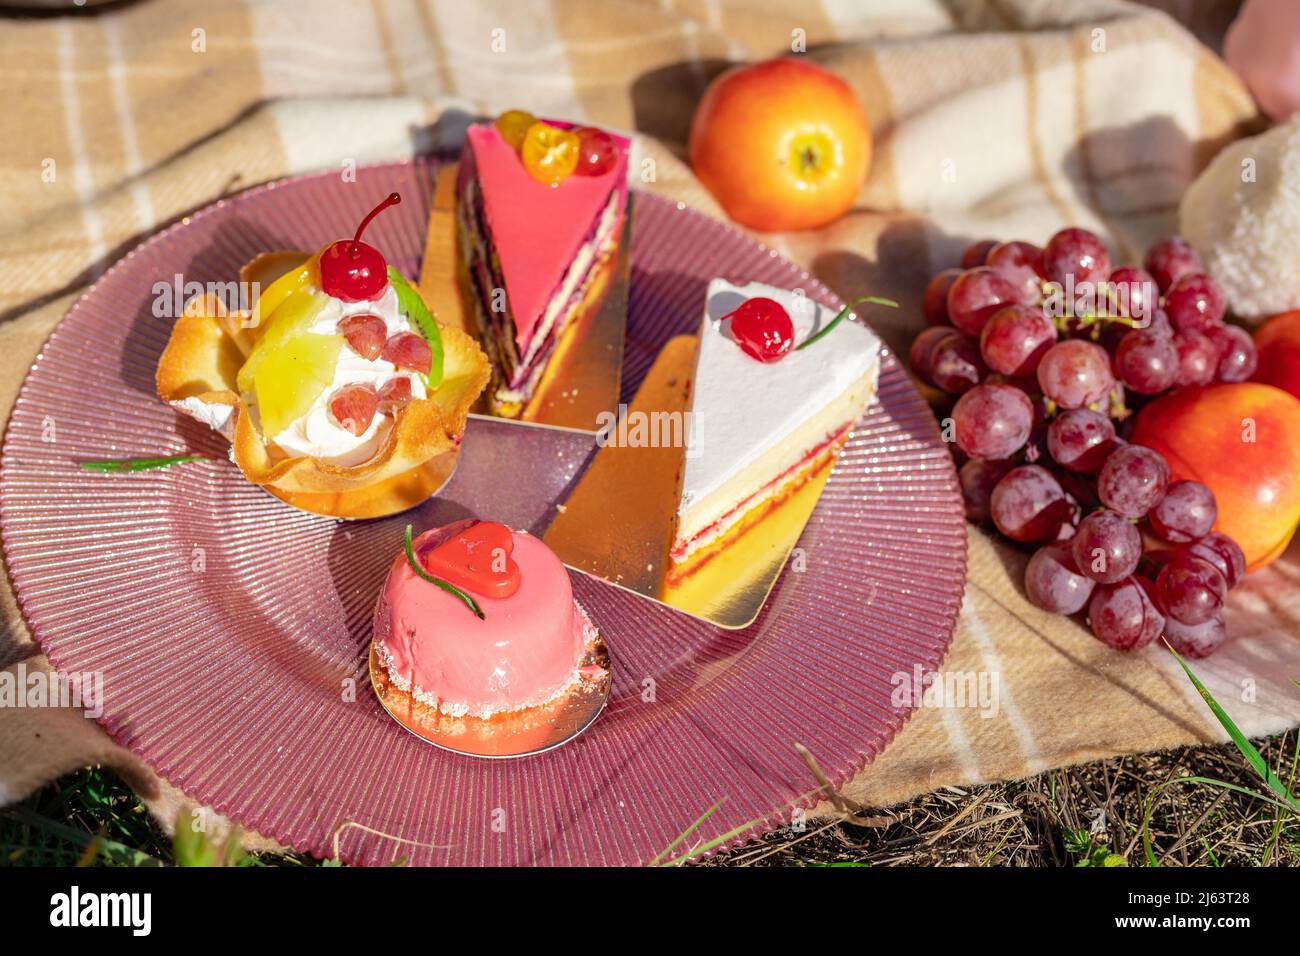 Composizione su un copriletto di dolci, uva e pesche Foto Stock